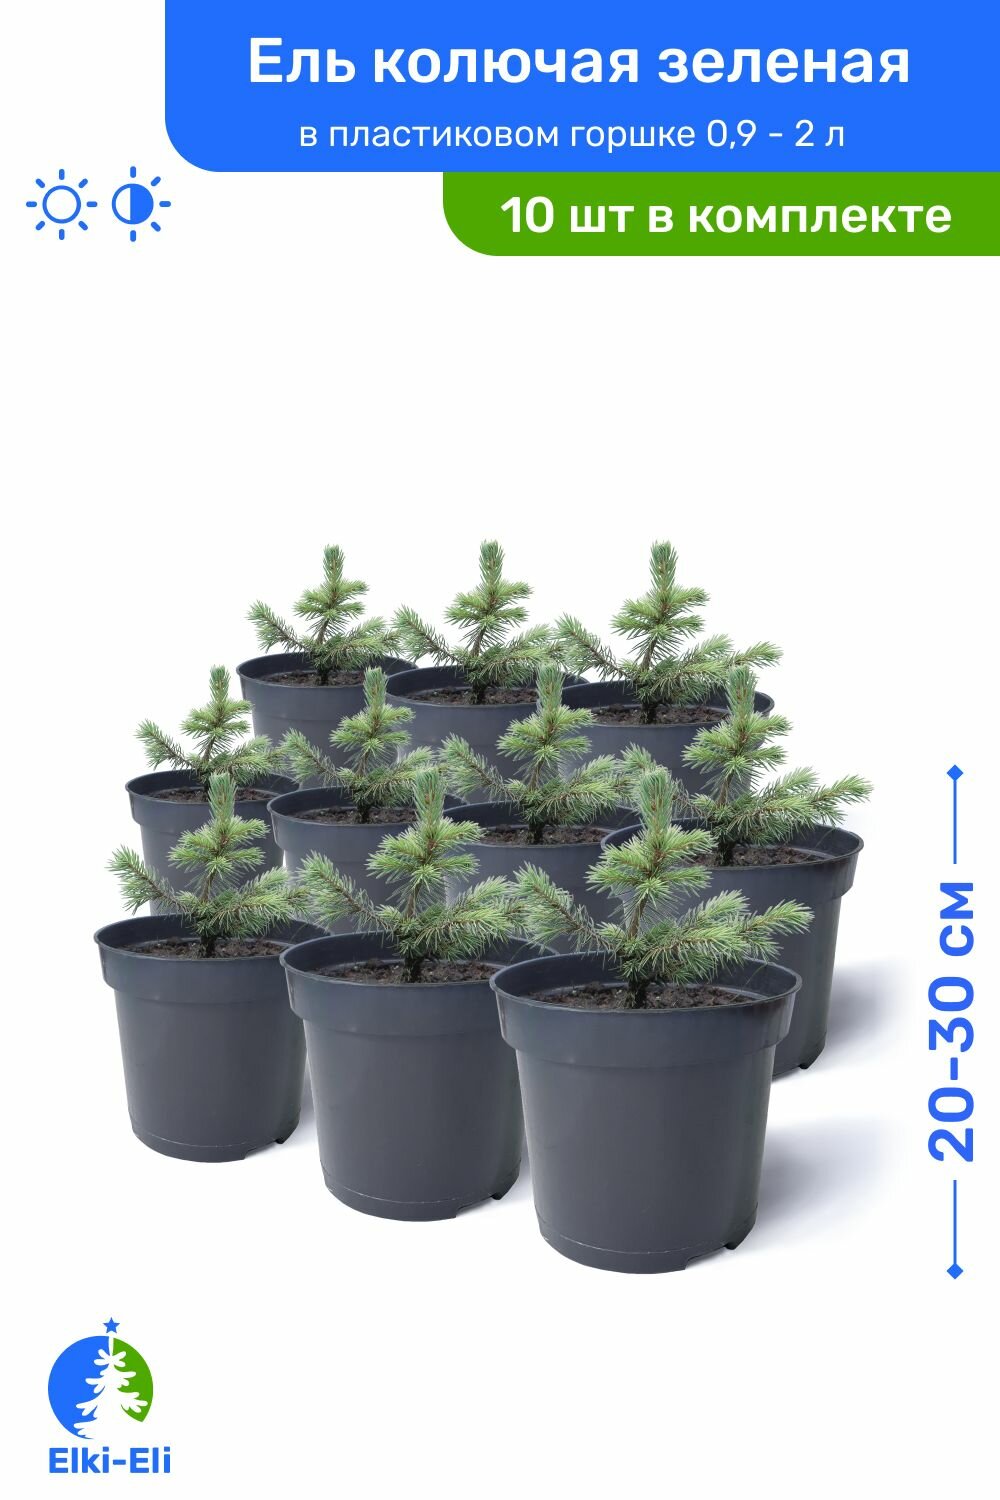 Ель колючая зелёная 20-30 см в пластиковом горшке 09-2 л саженец хвойное живое растение комплект из 10 шт